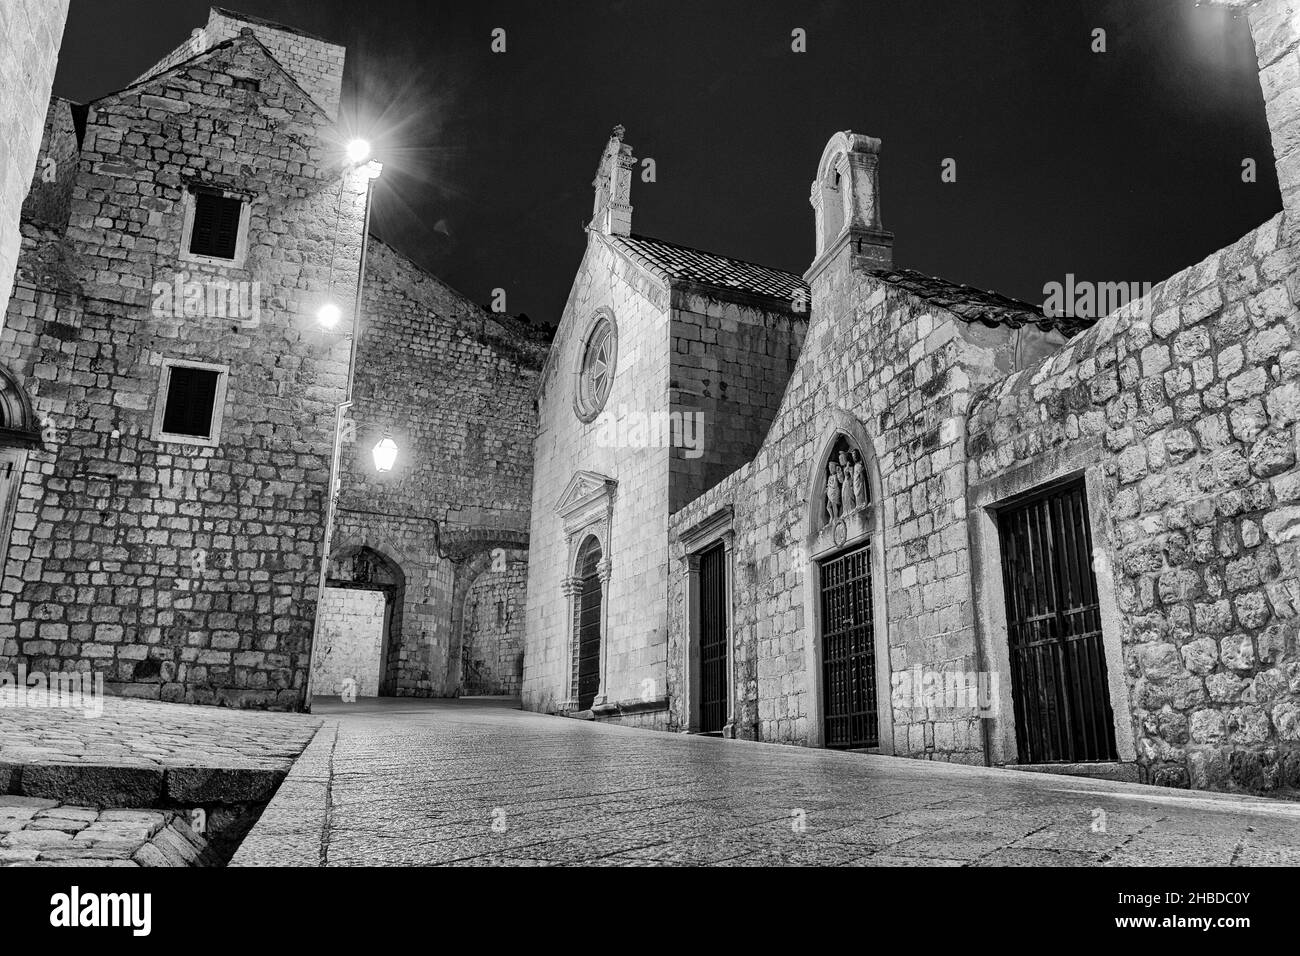 Photo noir et blanc de la rue à Dubrovnik, Croatie Banque D'Images